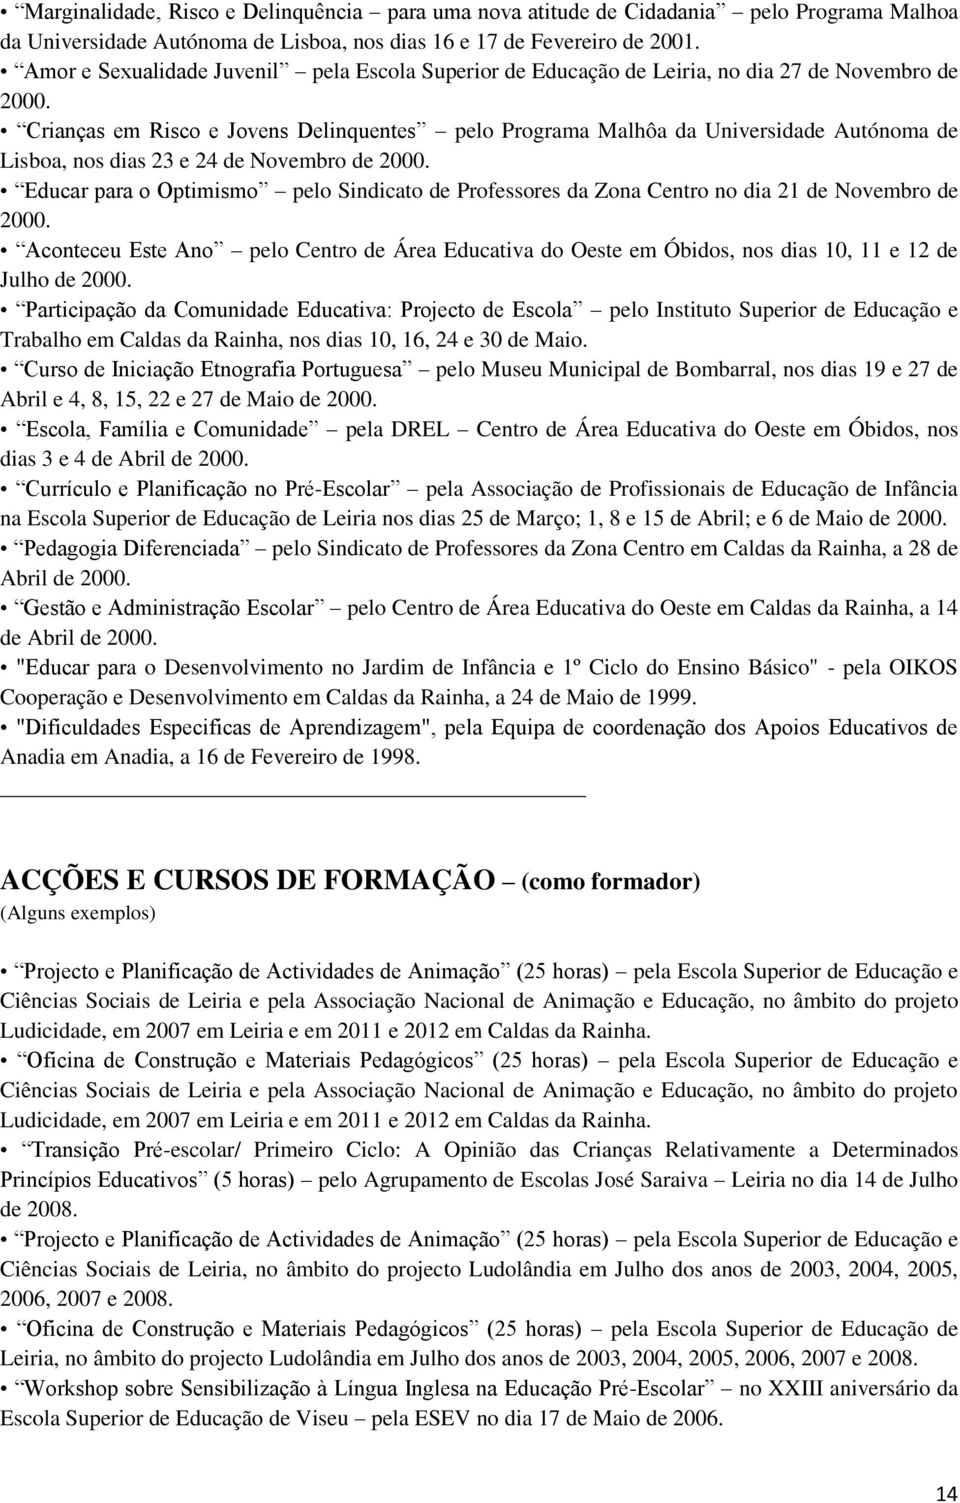 Crianças em Risco e Jovens Delinquentes pelo Programa Malhôa da Universidade Autónoma de Lisboa, nos dias 23 e 24 de Novembro de 2000.